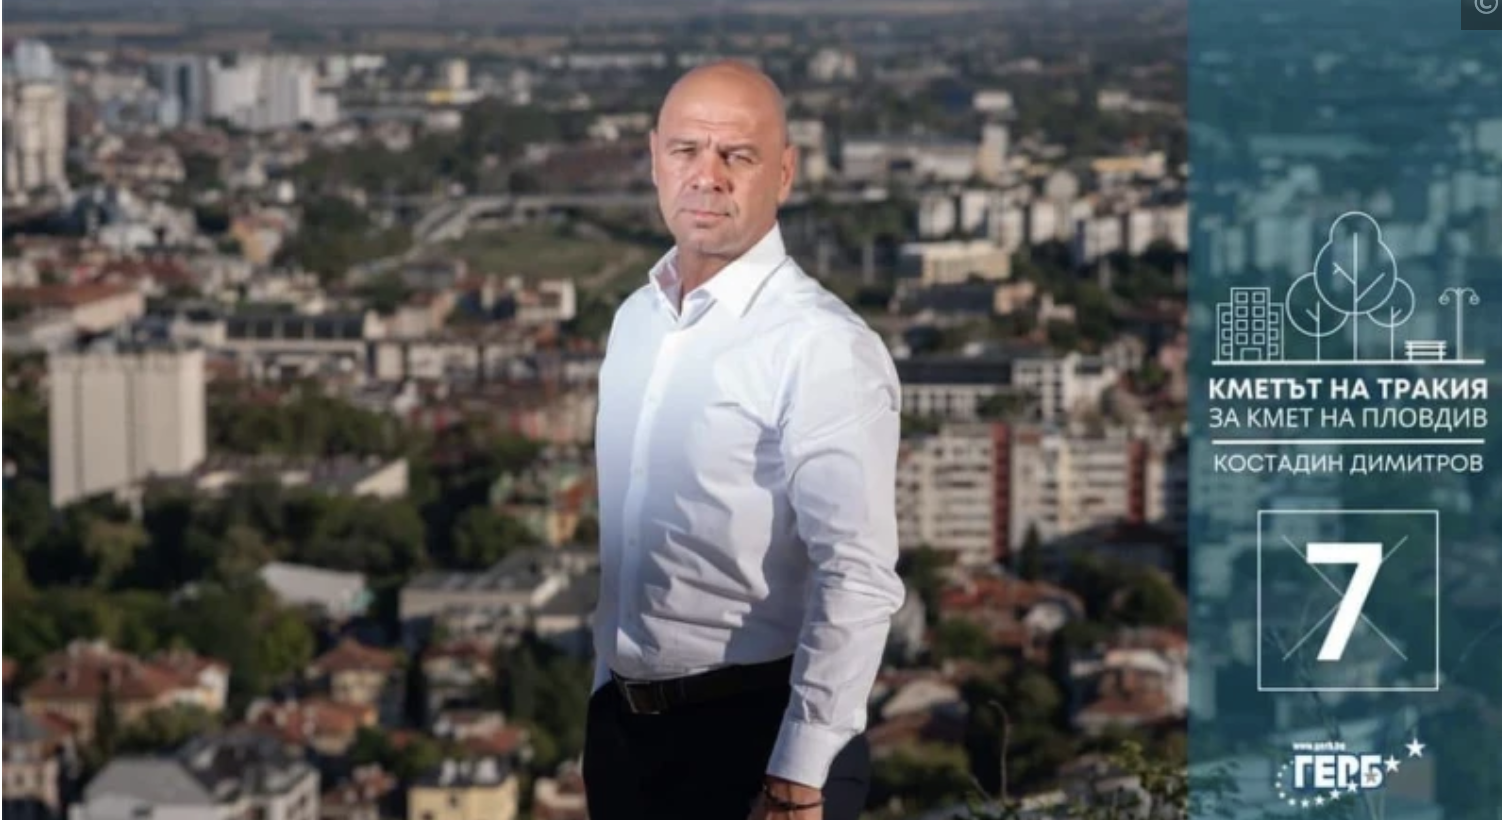 Слави Георгиев общински съветник от листата на ГЕРБ публикува позиция